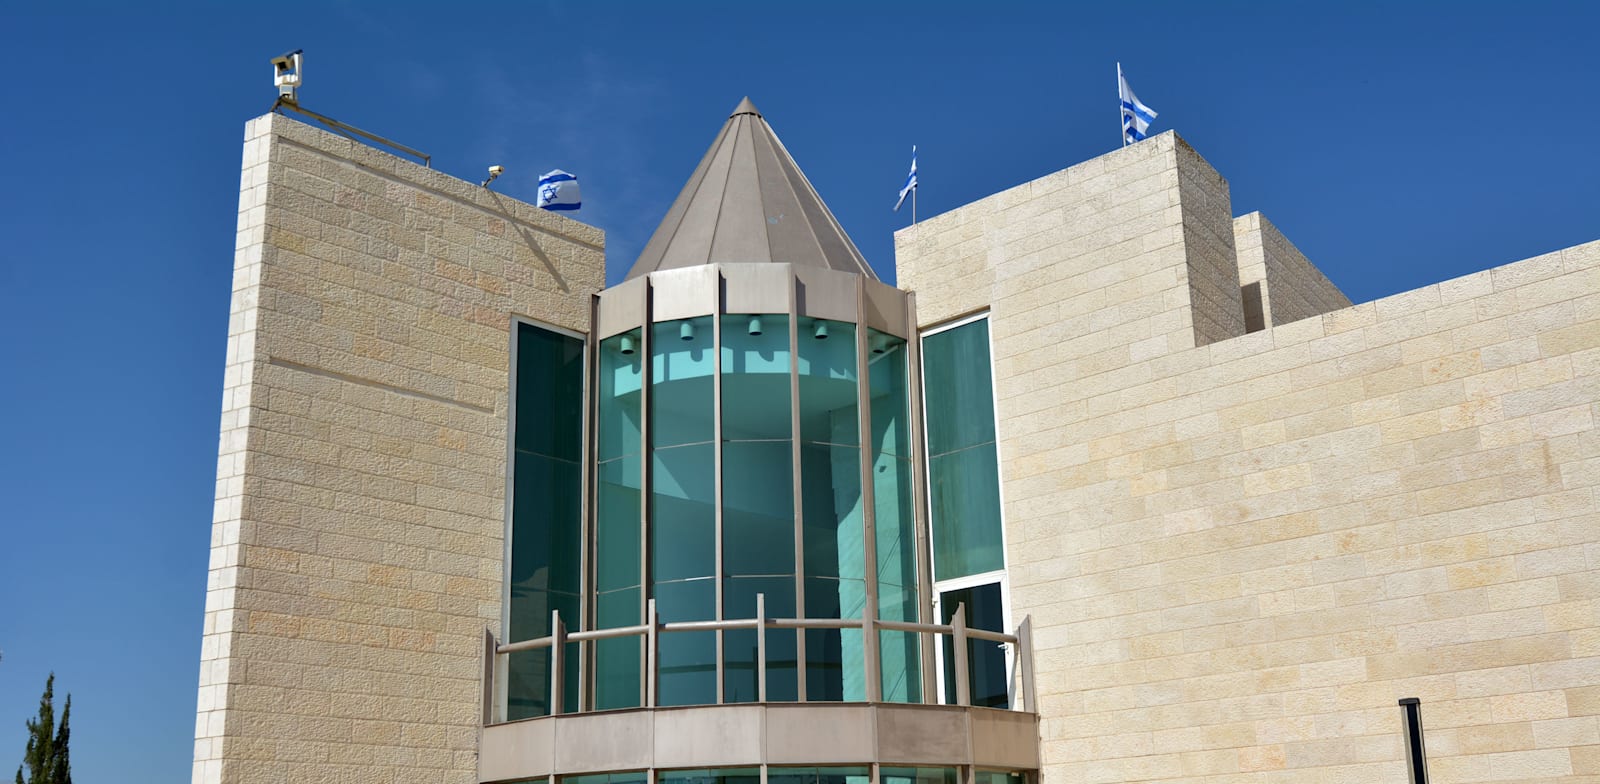 בניין בית המשפט העליון בירושלים / צילום: Shutterstock